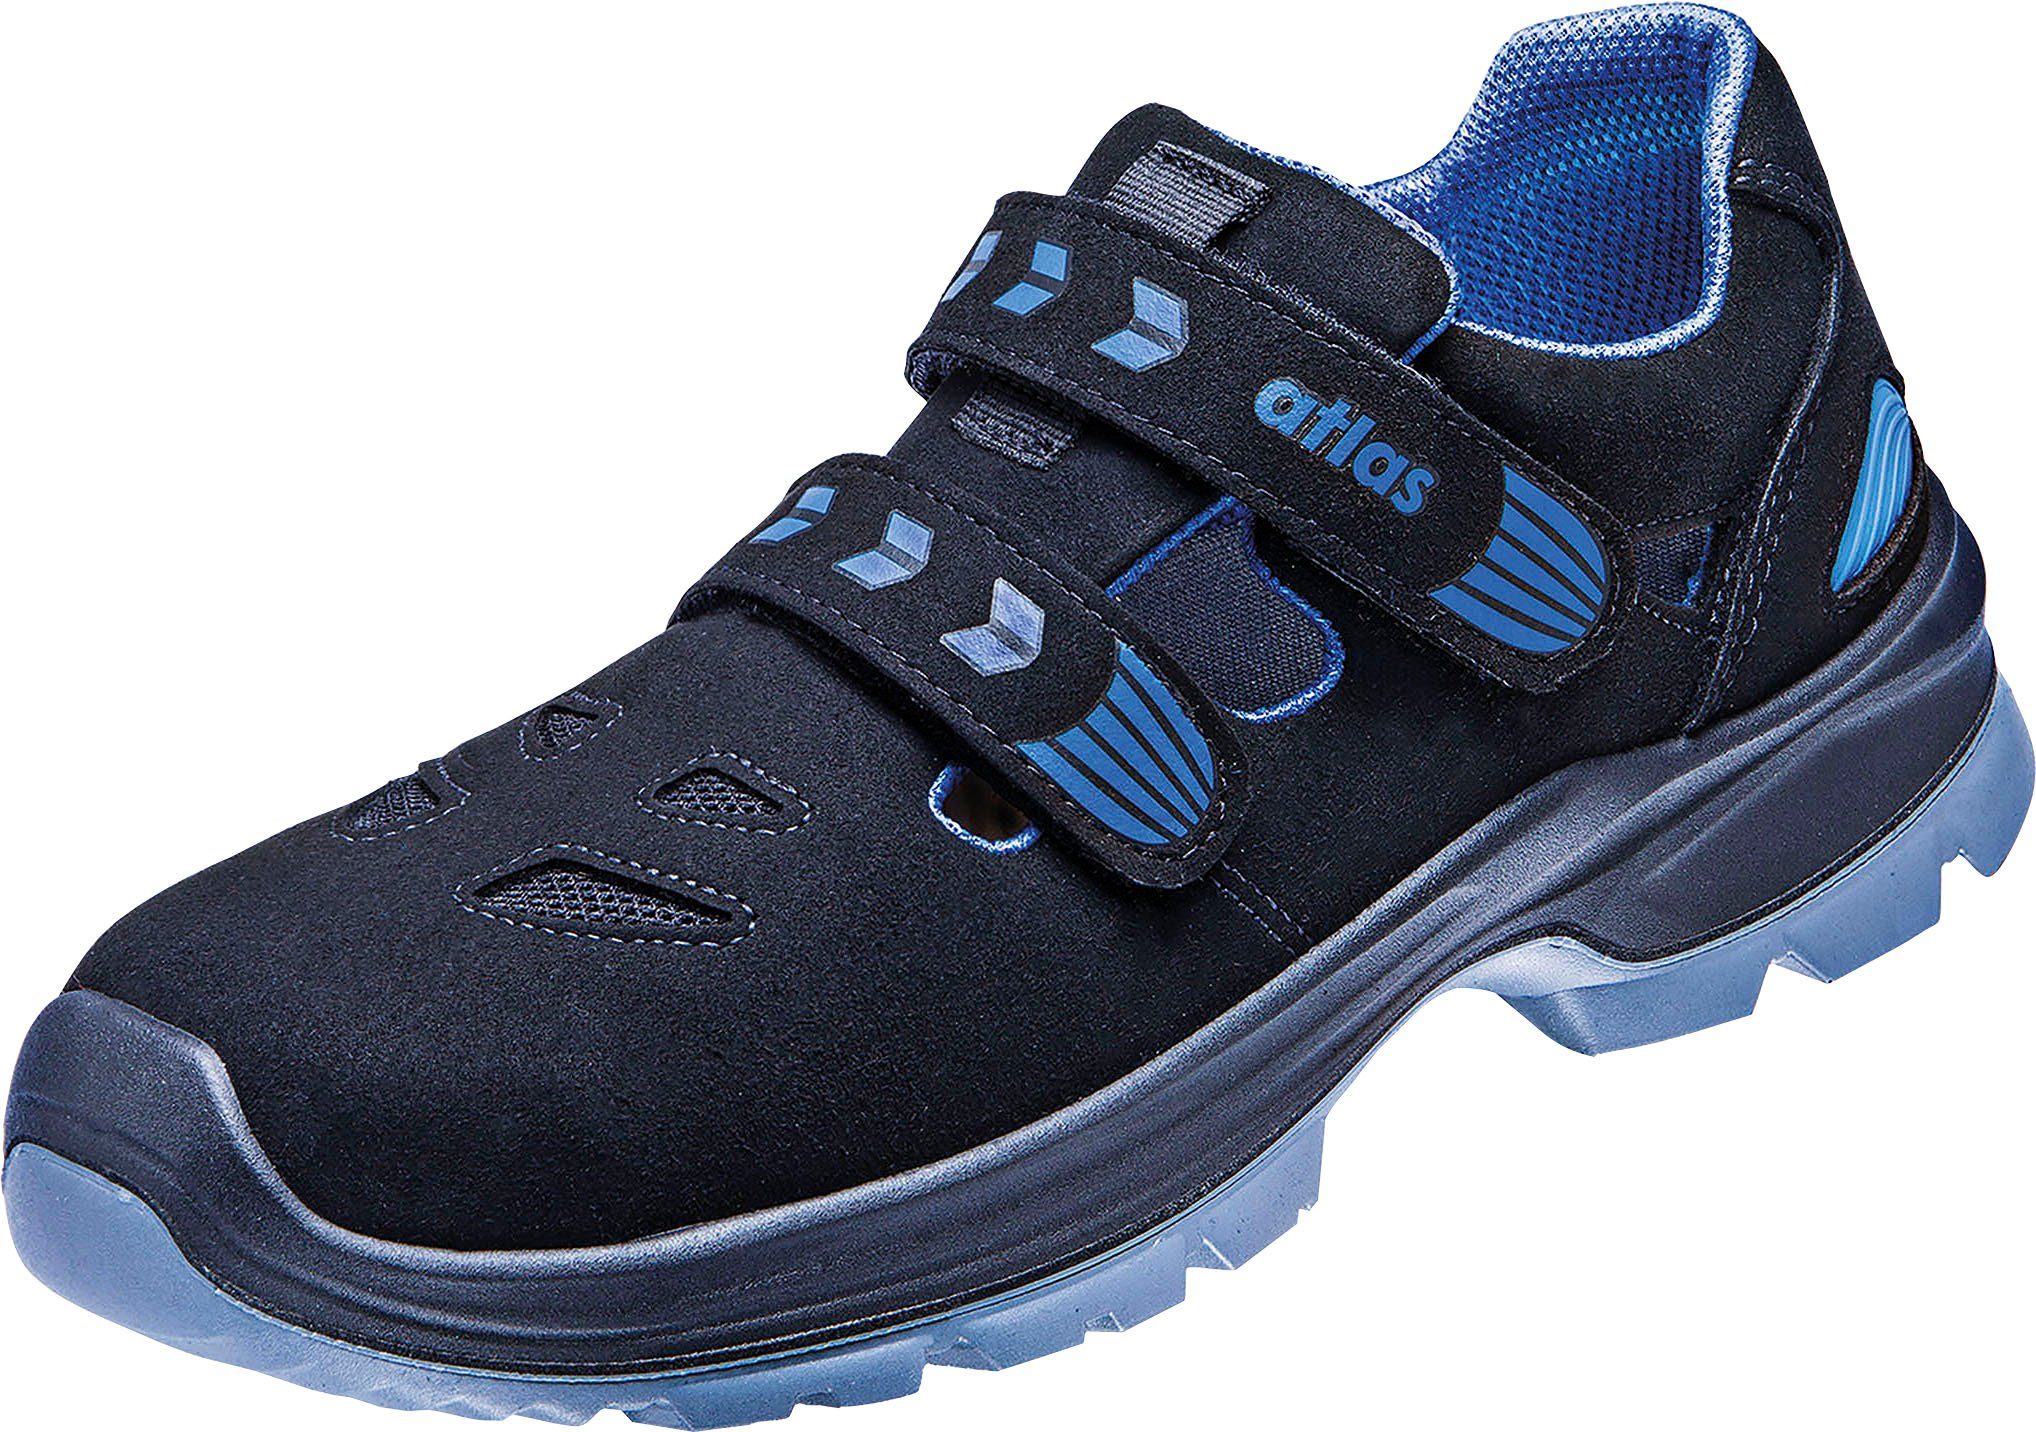 Sandale, Atlas Schuhweite Sicherheitsschuh Ergo-Med 360 12, S1 Sicherheitsklasse Schuhe